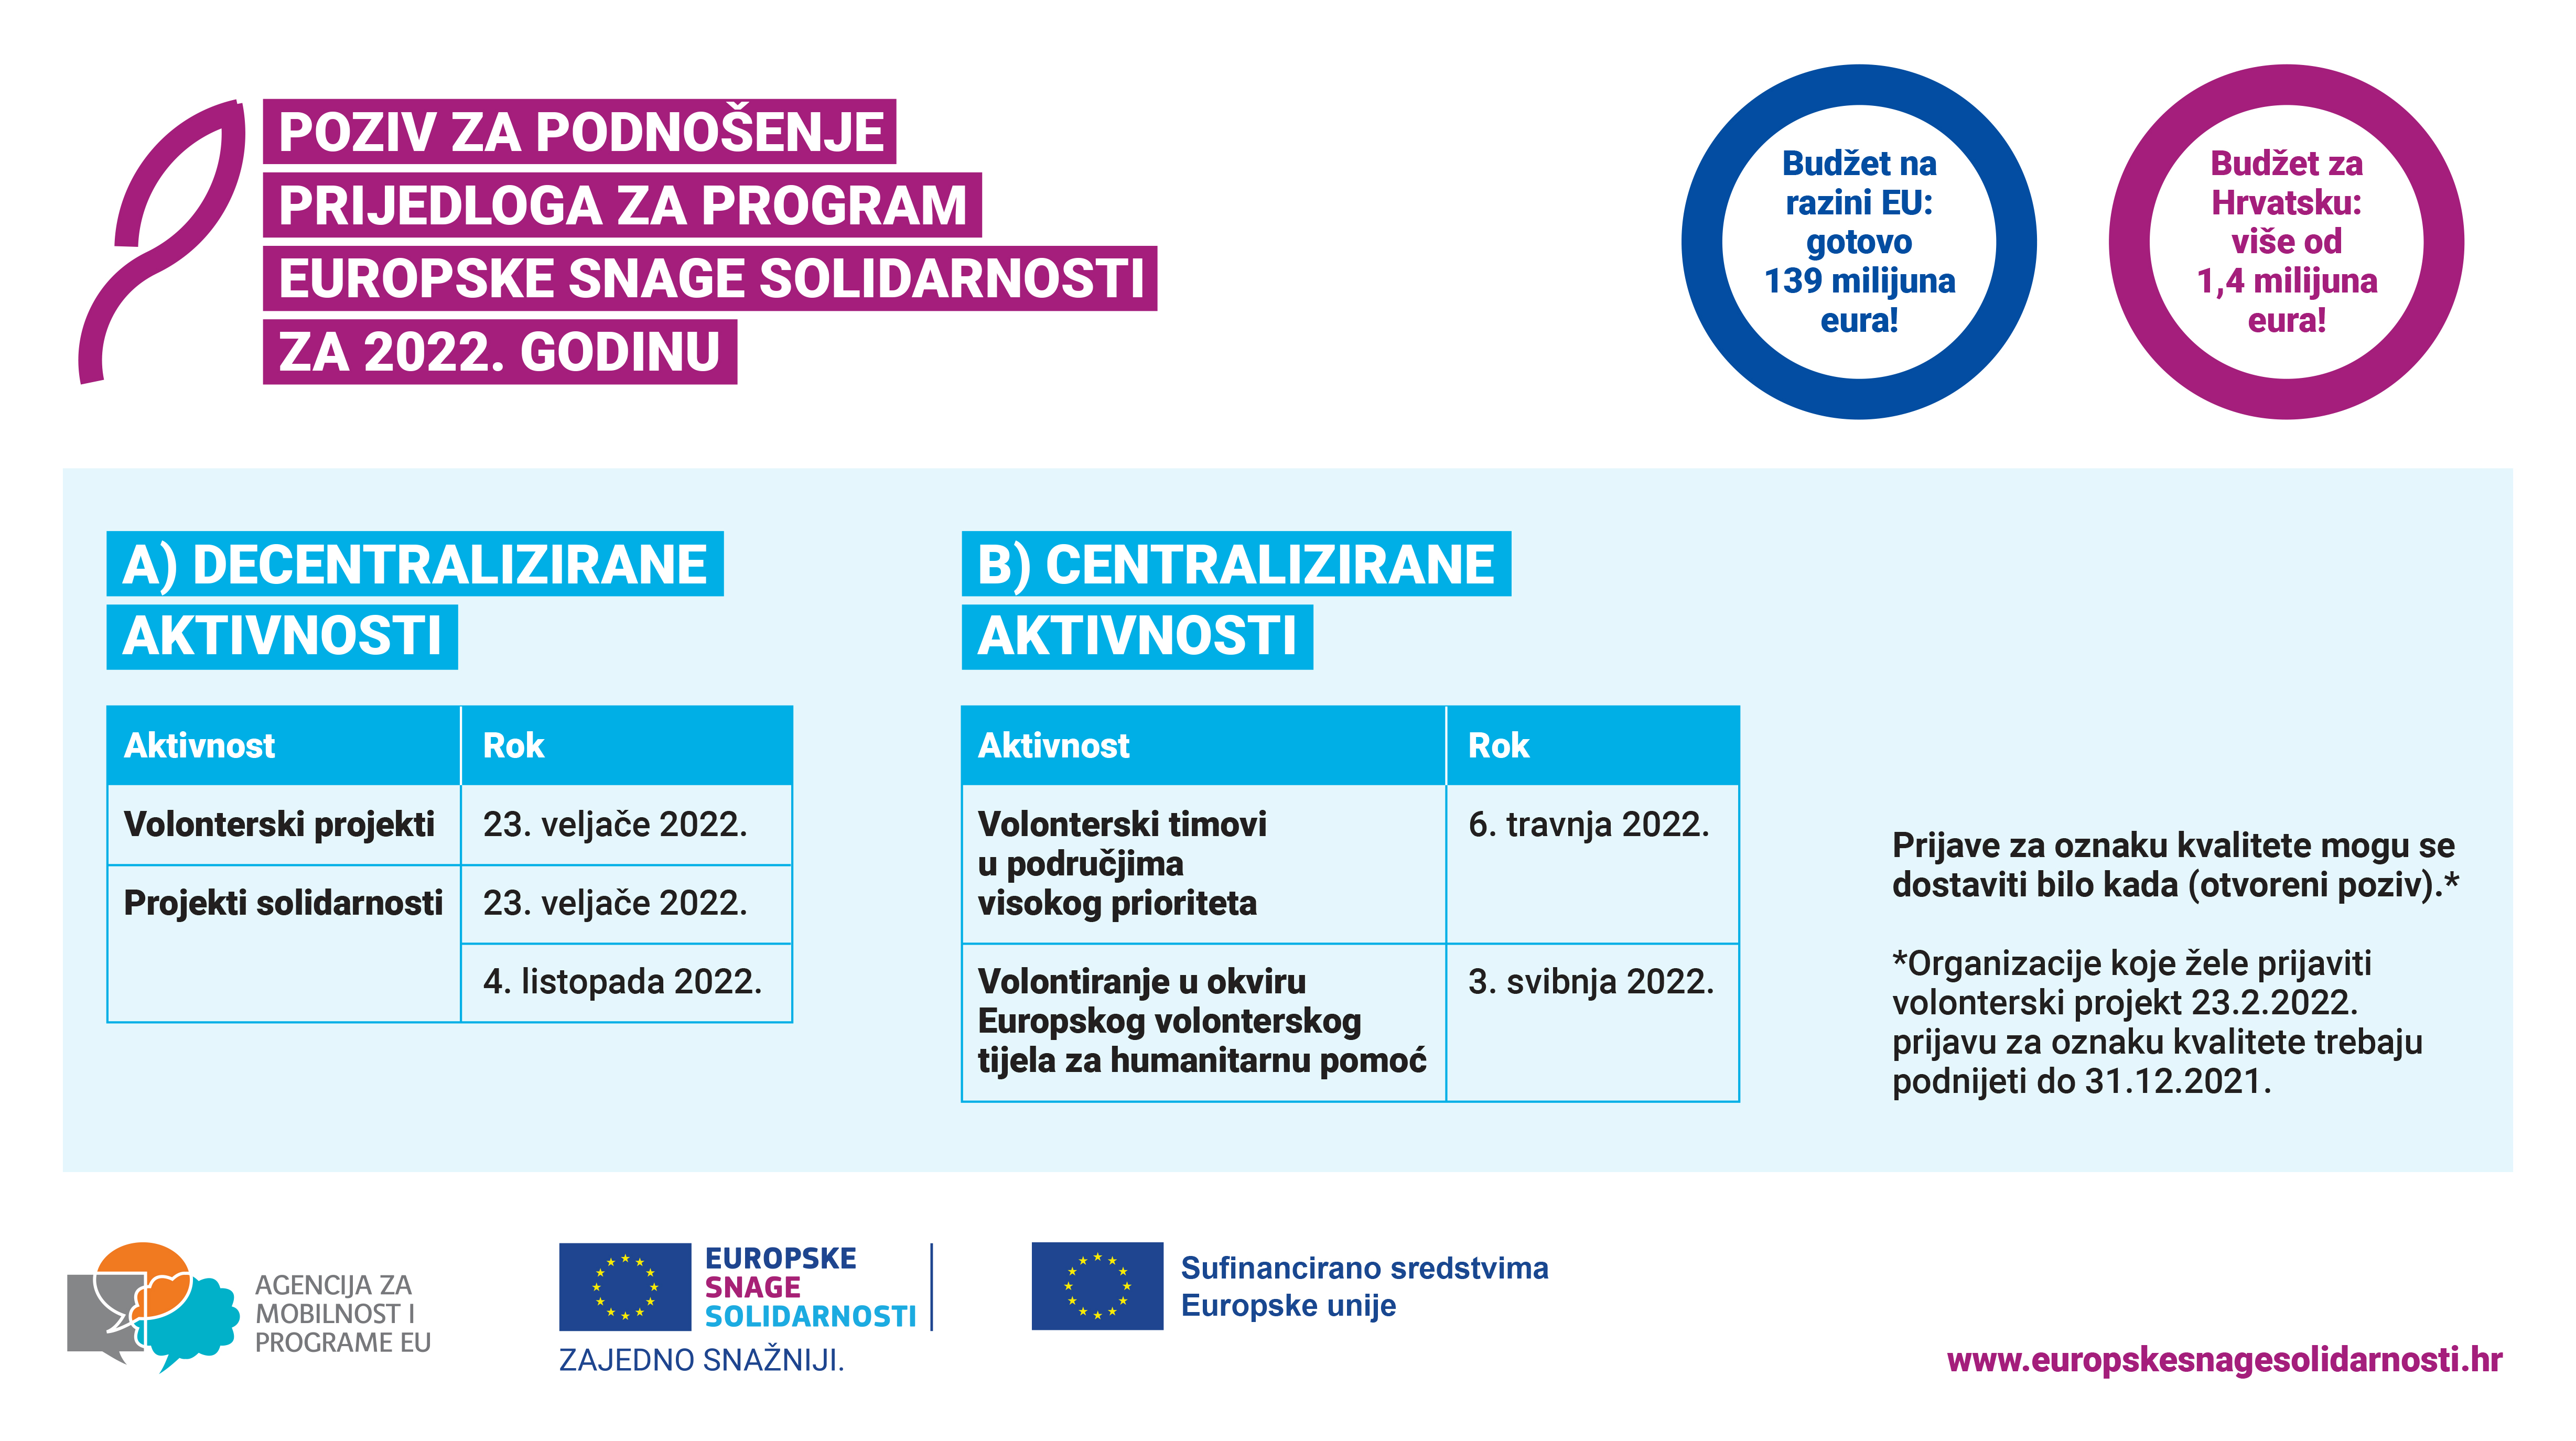 Europske snage solidarnosti u 2022. godini mladima u Hrvatskoj donose više od 1,4 milijuna eura - Slika 1